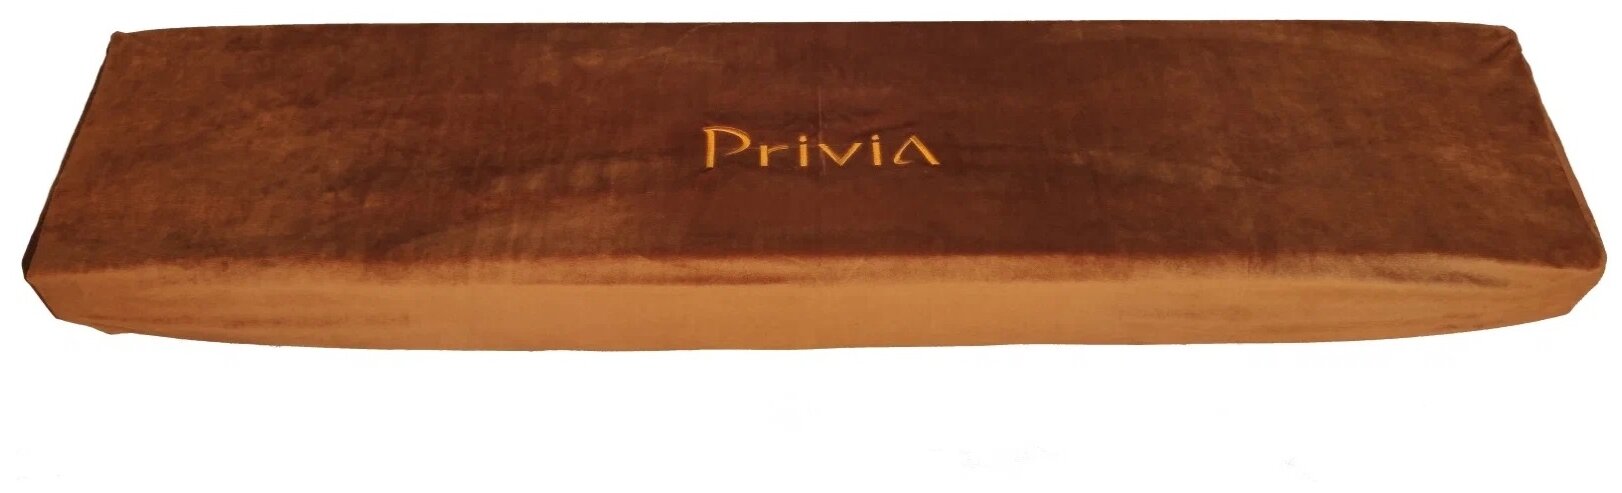 Накидка бархатная для цифрового фортепиано Casio Privia (охряно-коричневая)